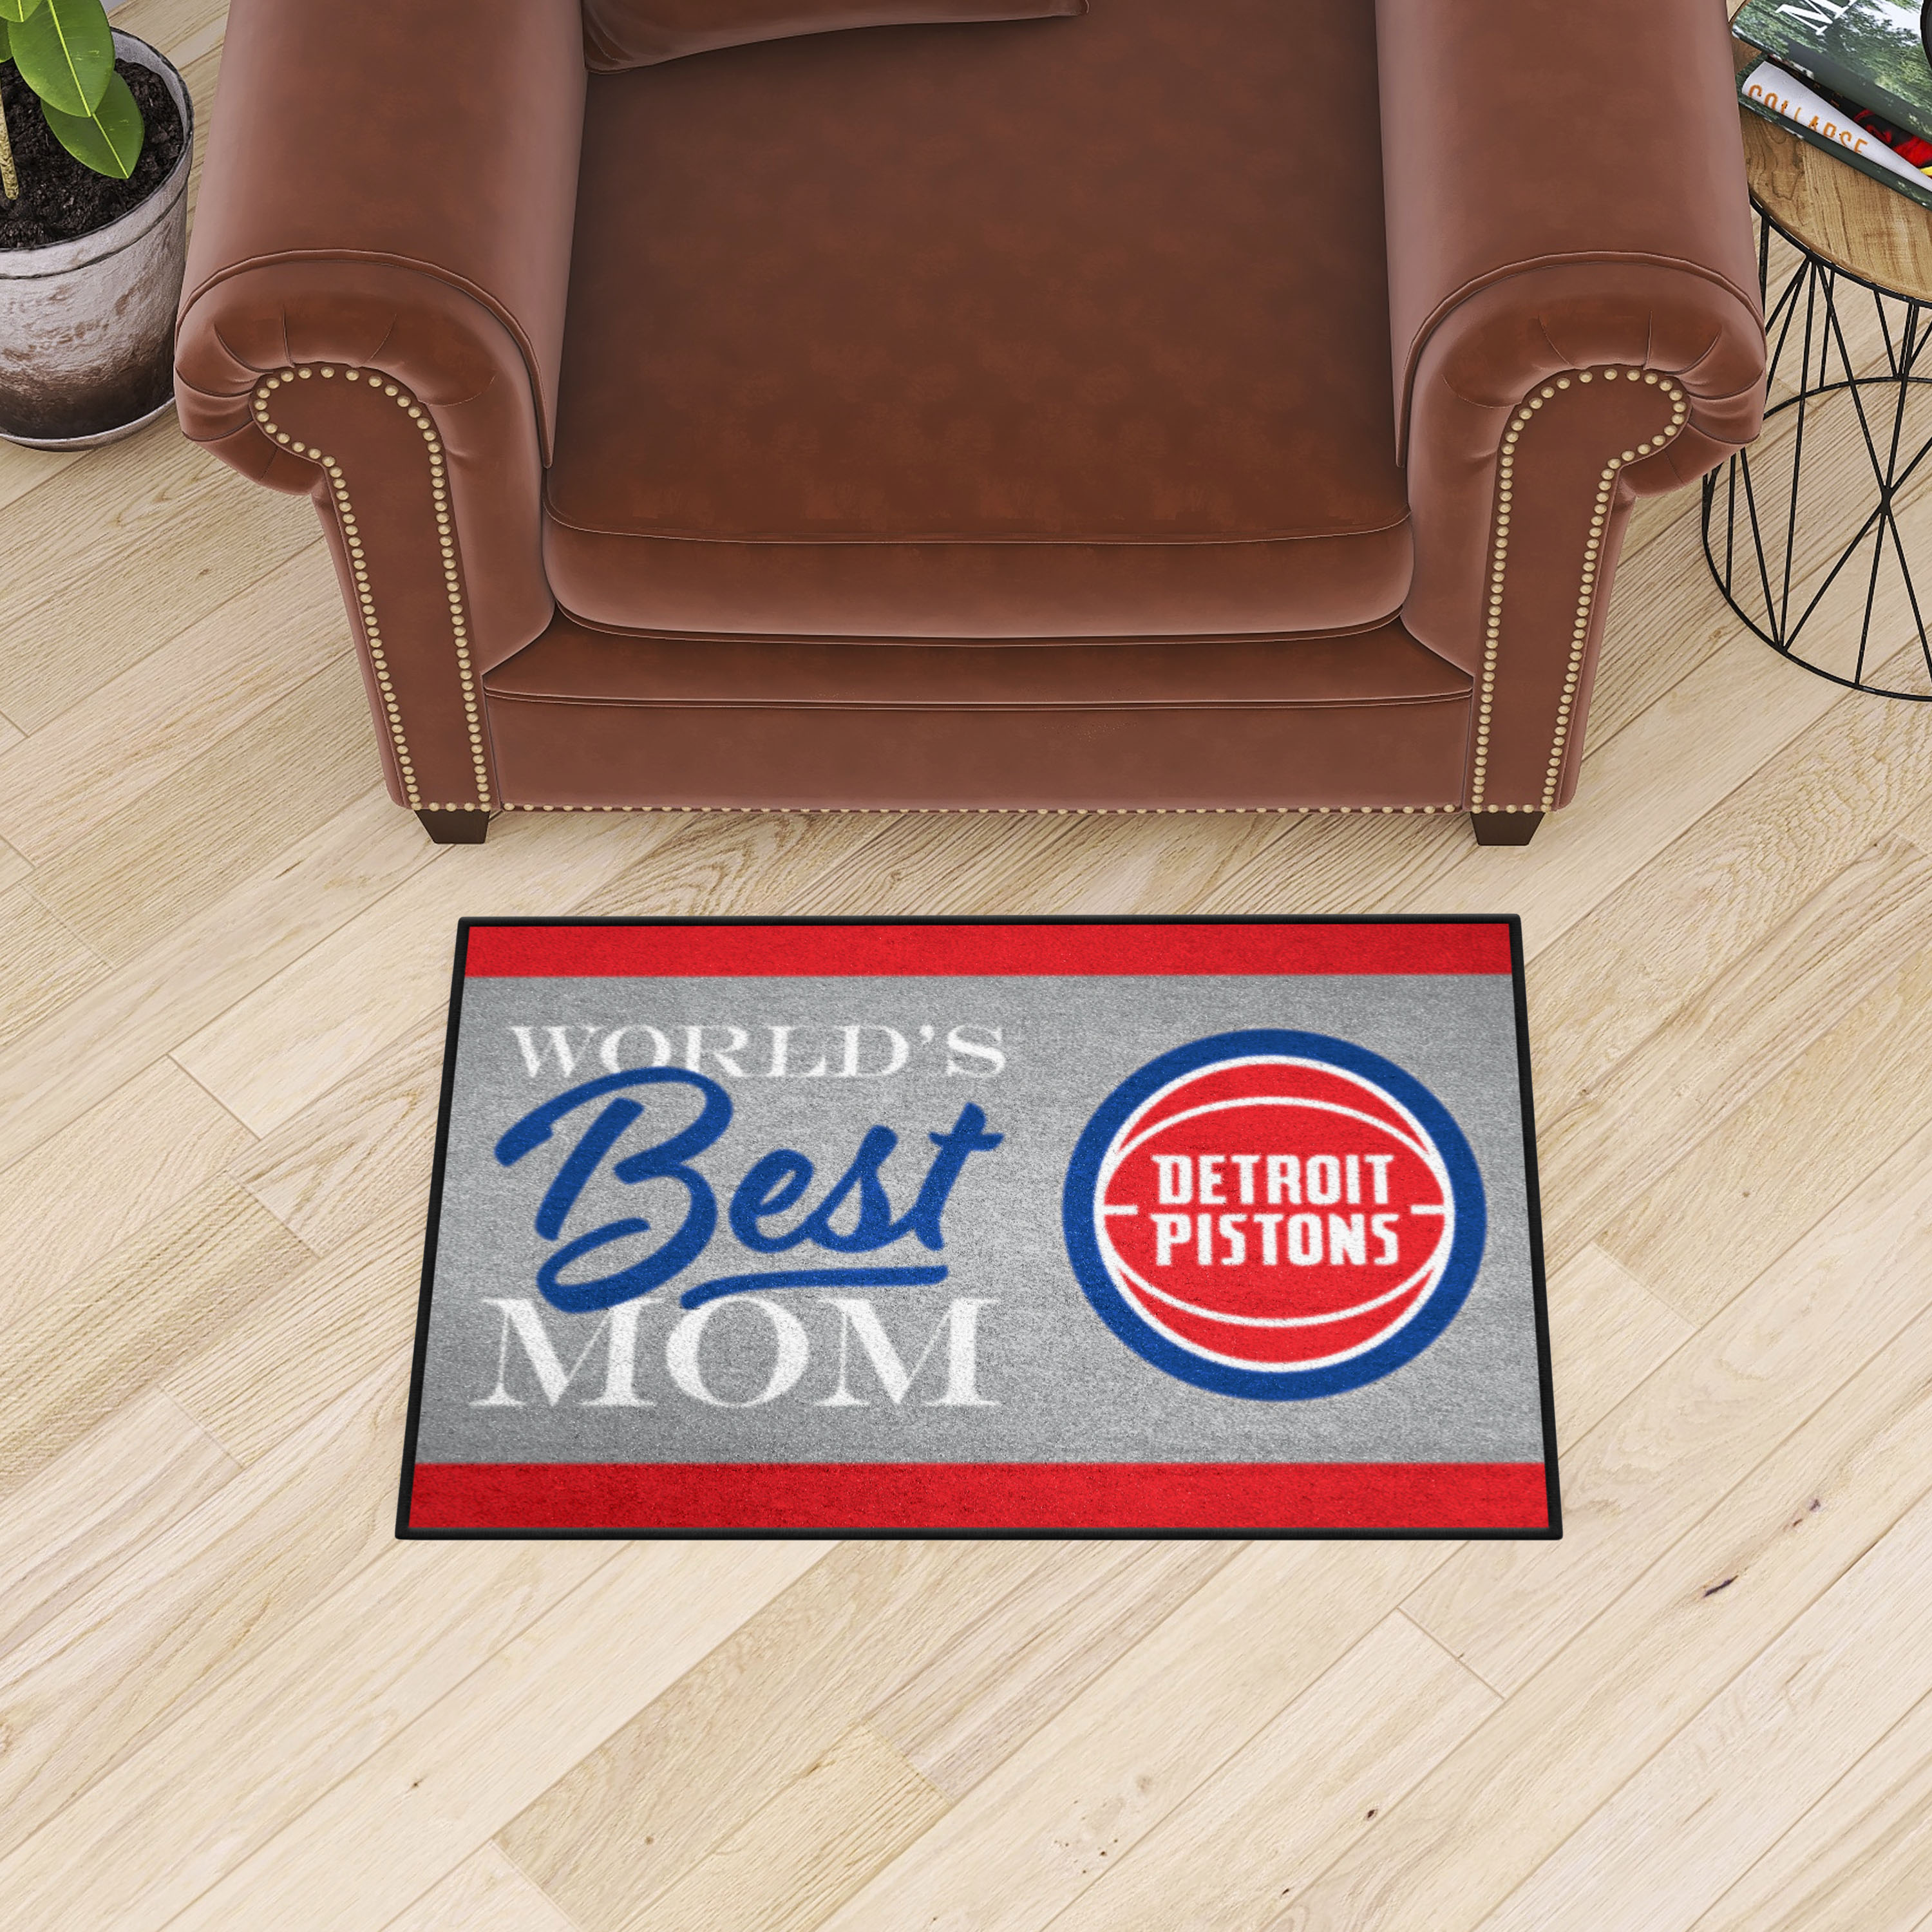 Detroit Pistons World's Best Mom Starter Doormat - 19 x 30